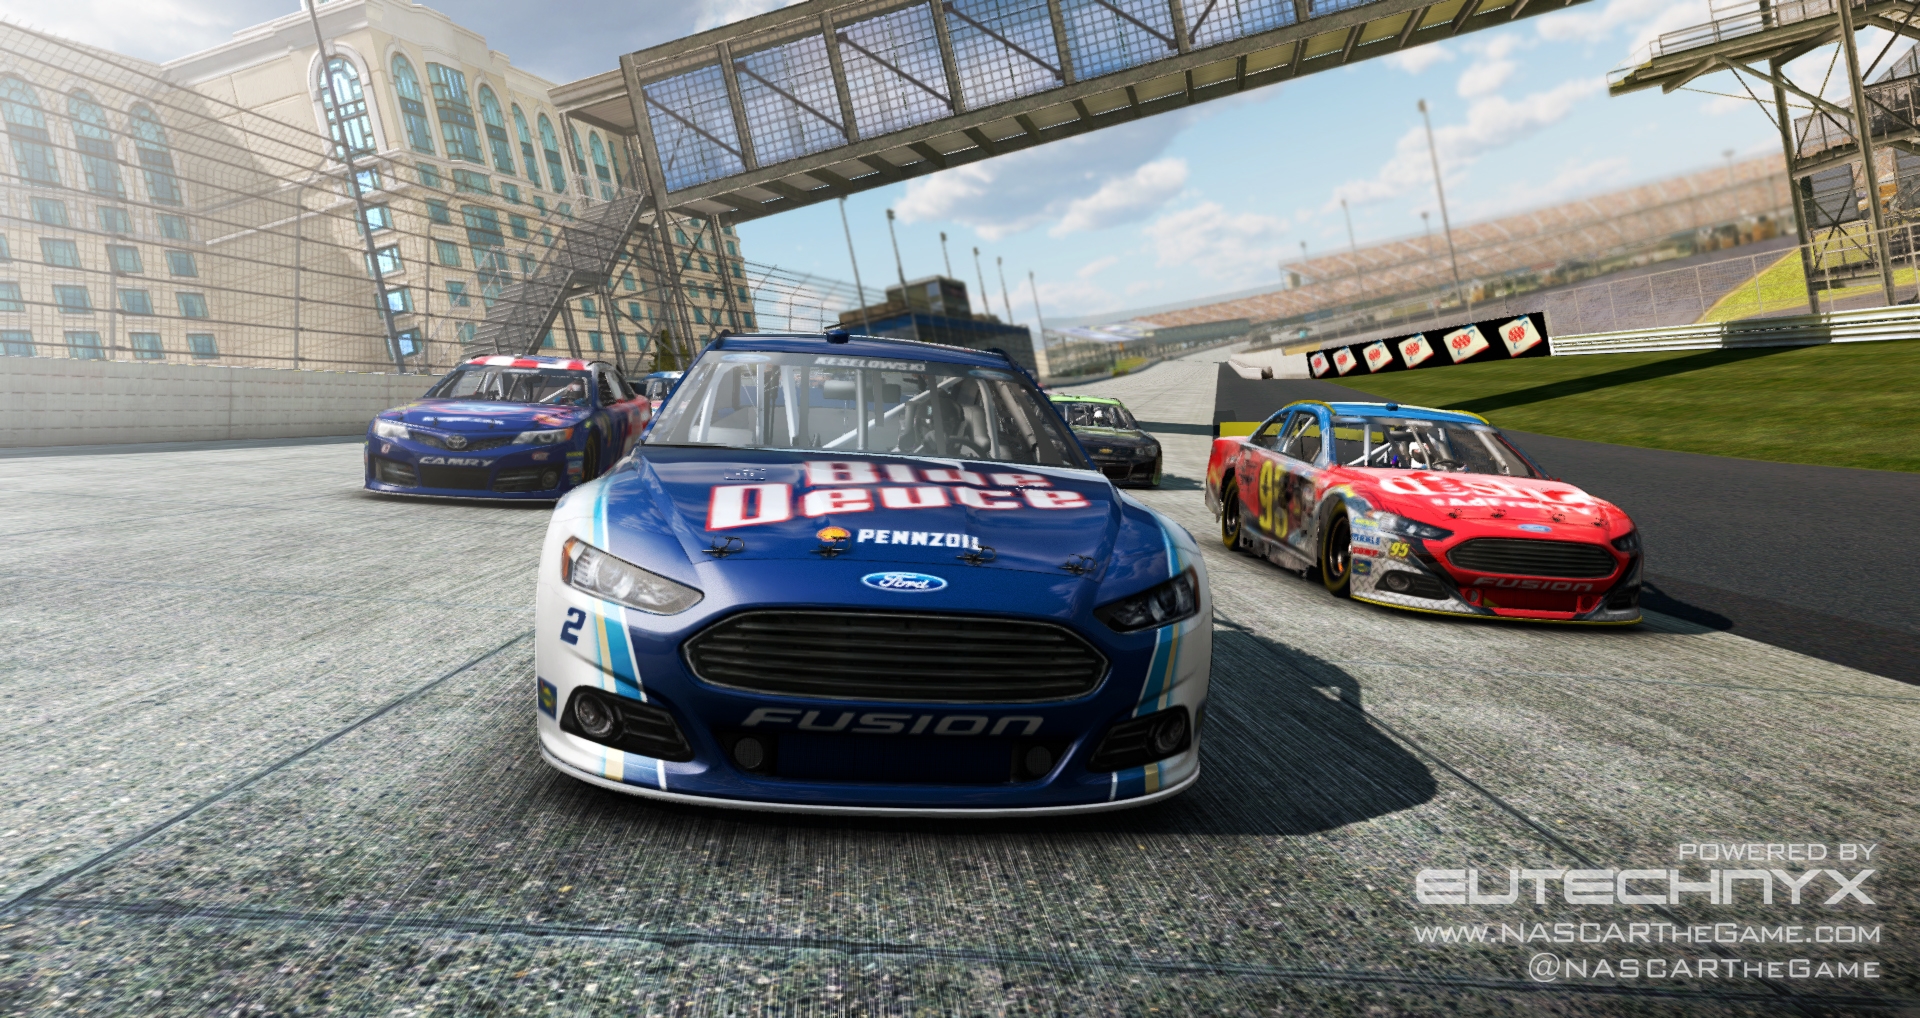 Скриншот из игры NASCAR: The Game 2013 под номером 1